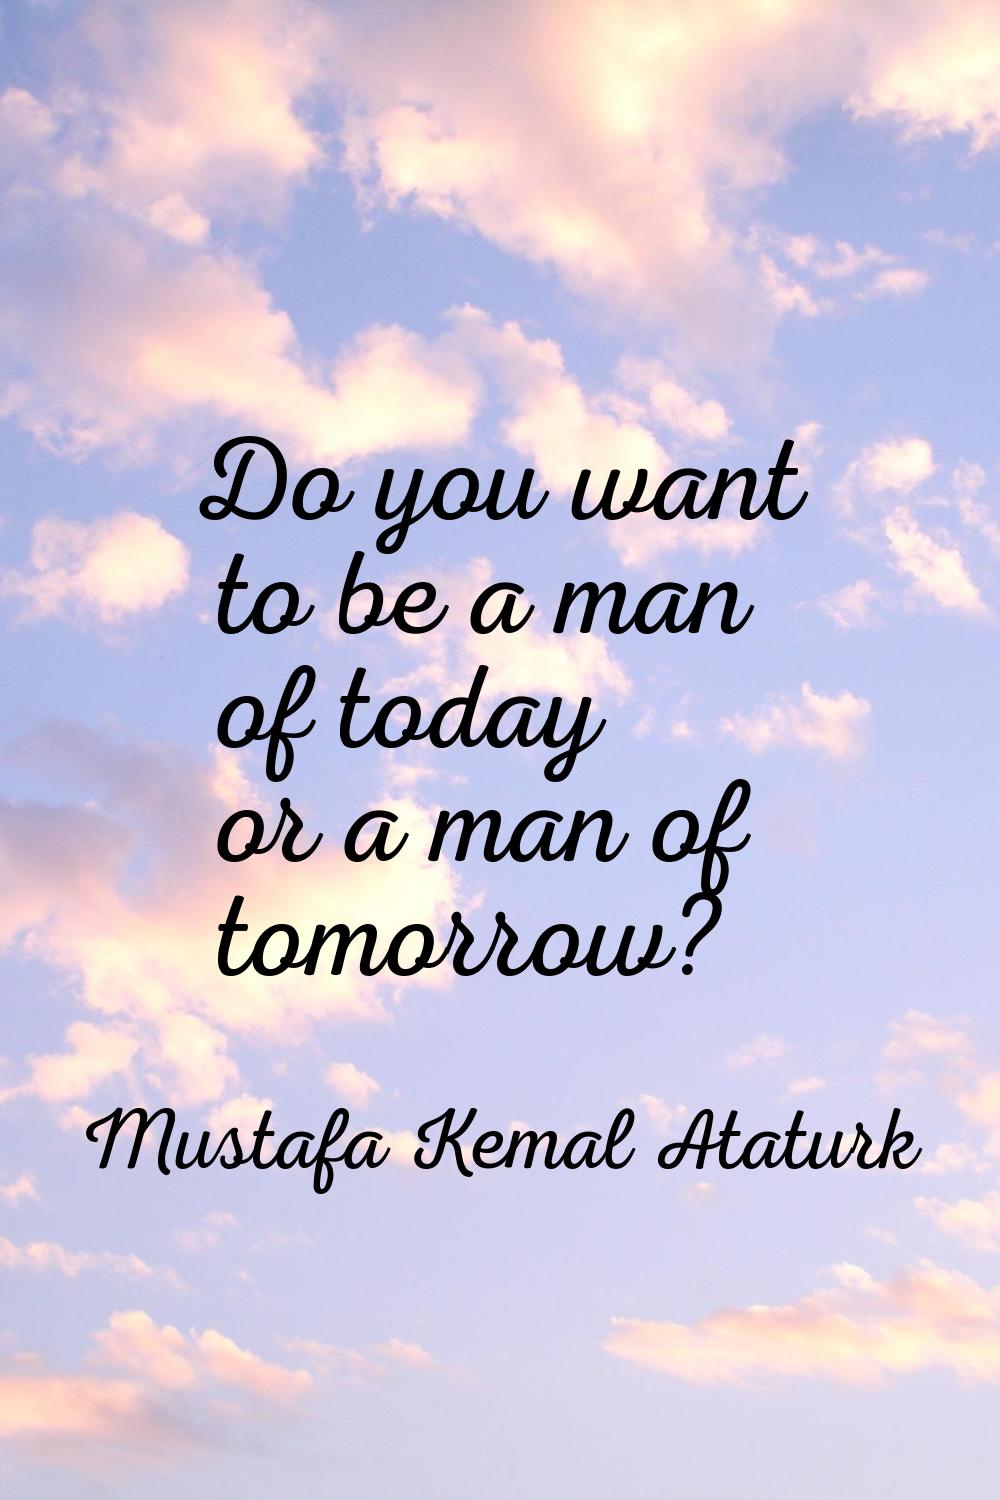 Do you want to be a man of today or a man of tomorrow?